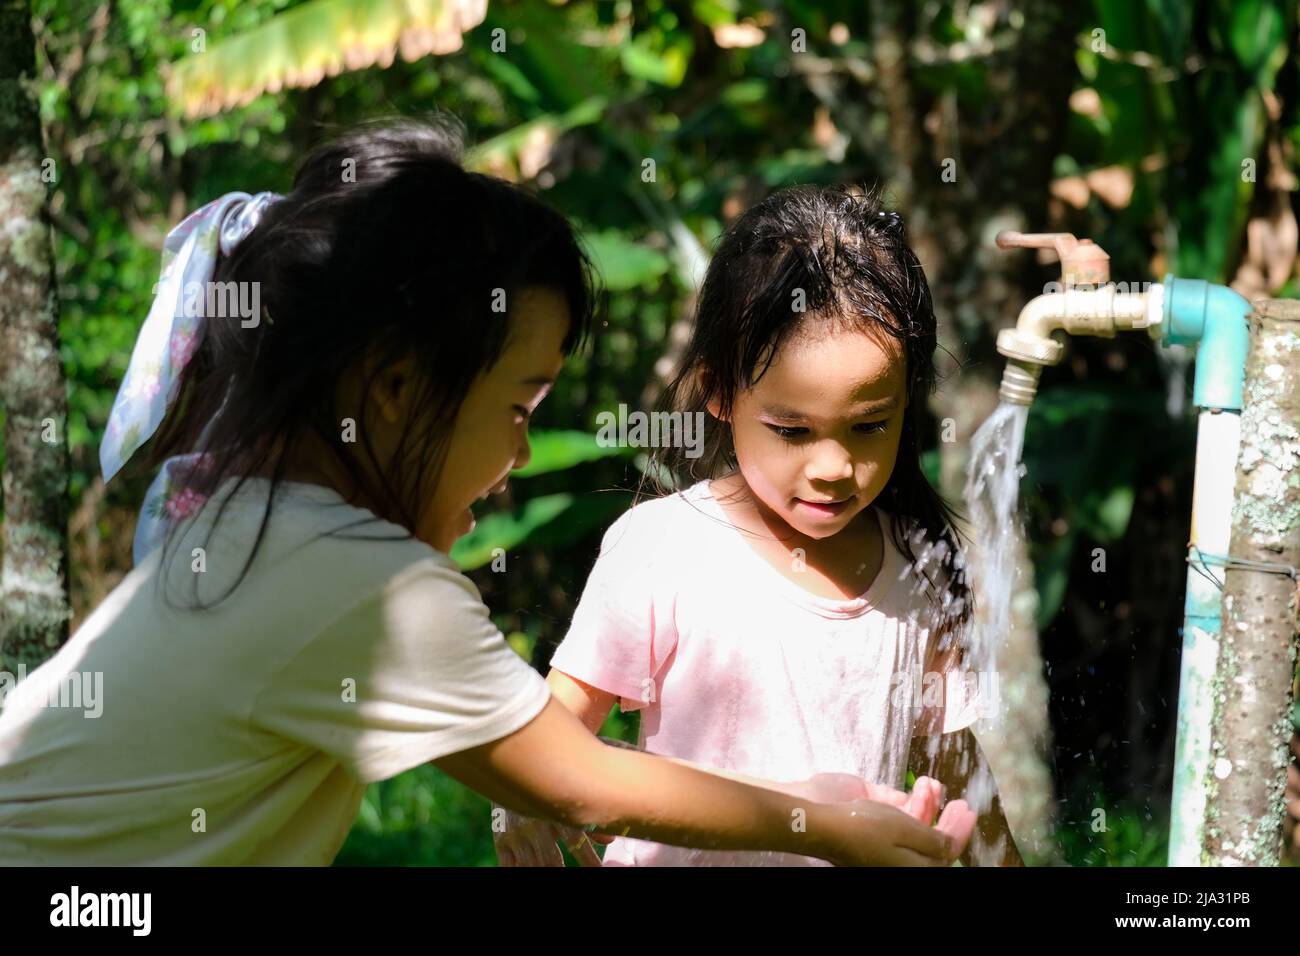 Zwei kleine Schwestern waschen sich die Hände am Wasserhahn im Freien. Zwei niedliche Mädchen drehen den Wasserhahn zu, um sich im Park die Hände zu waschen. Stockfoto